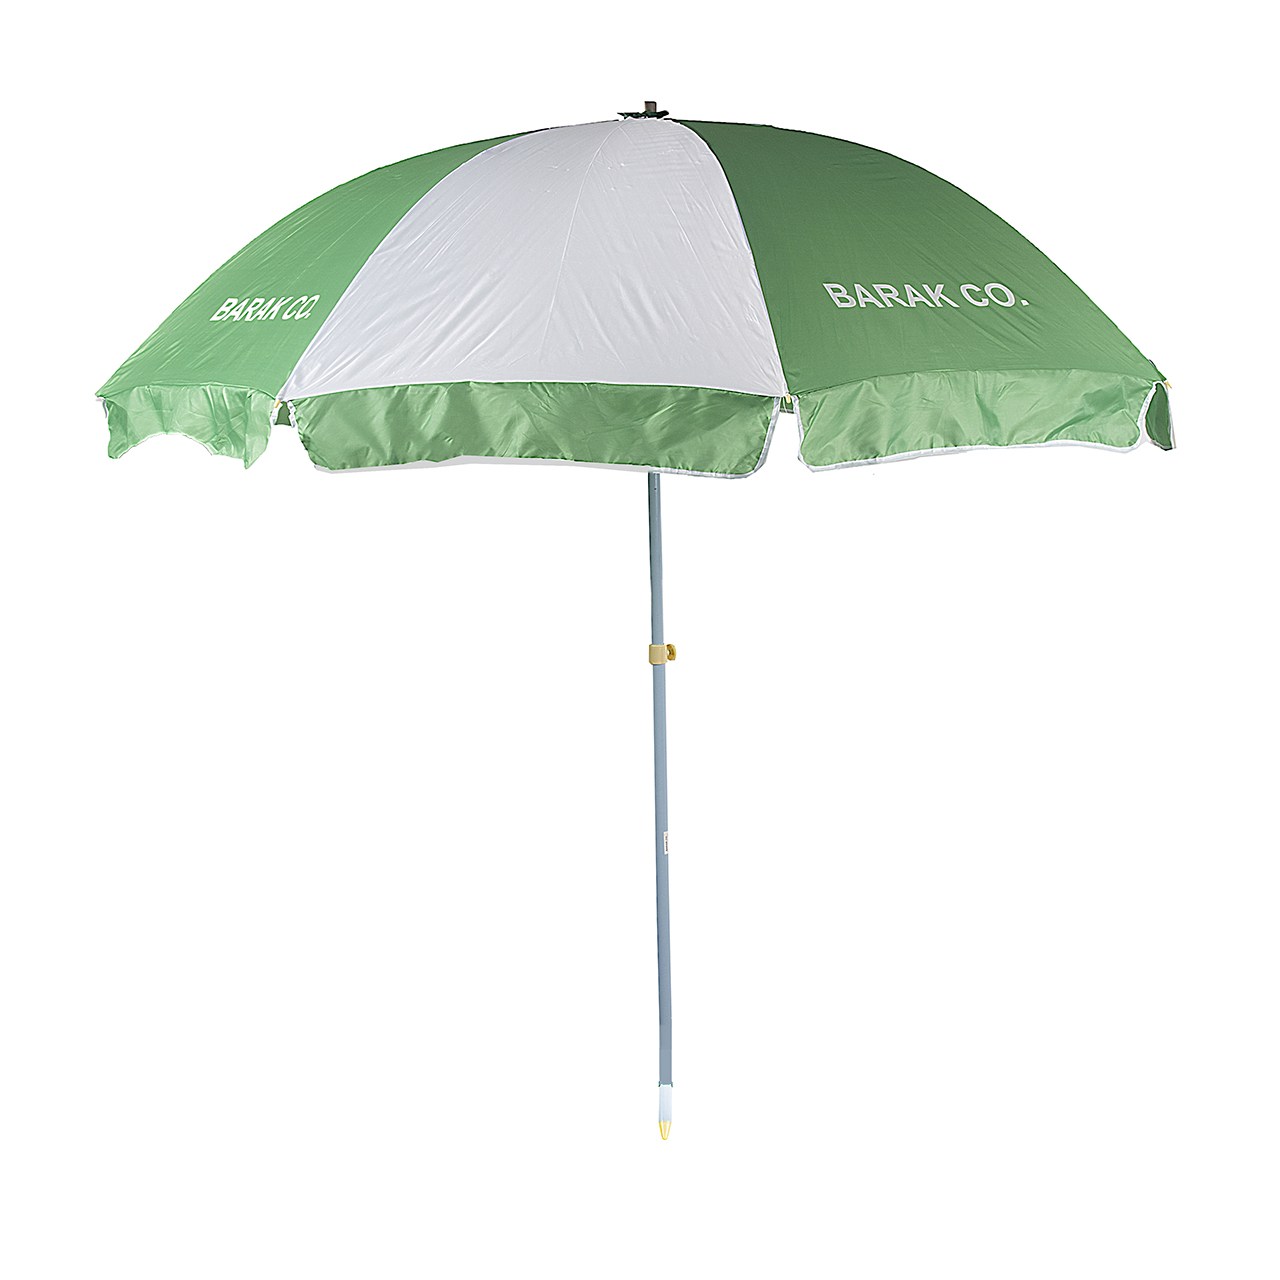 سایه بان چتری بارک مدل 16035